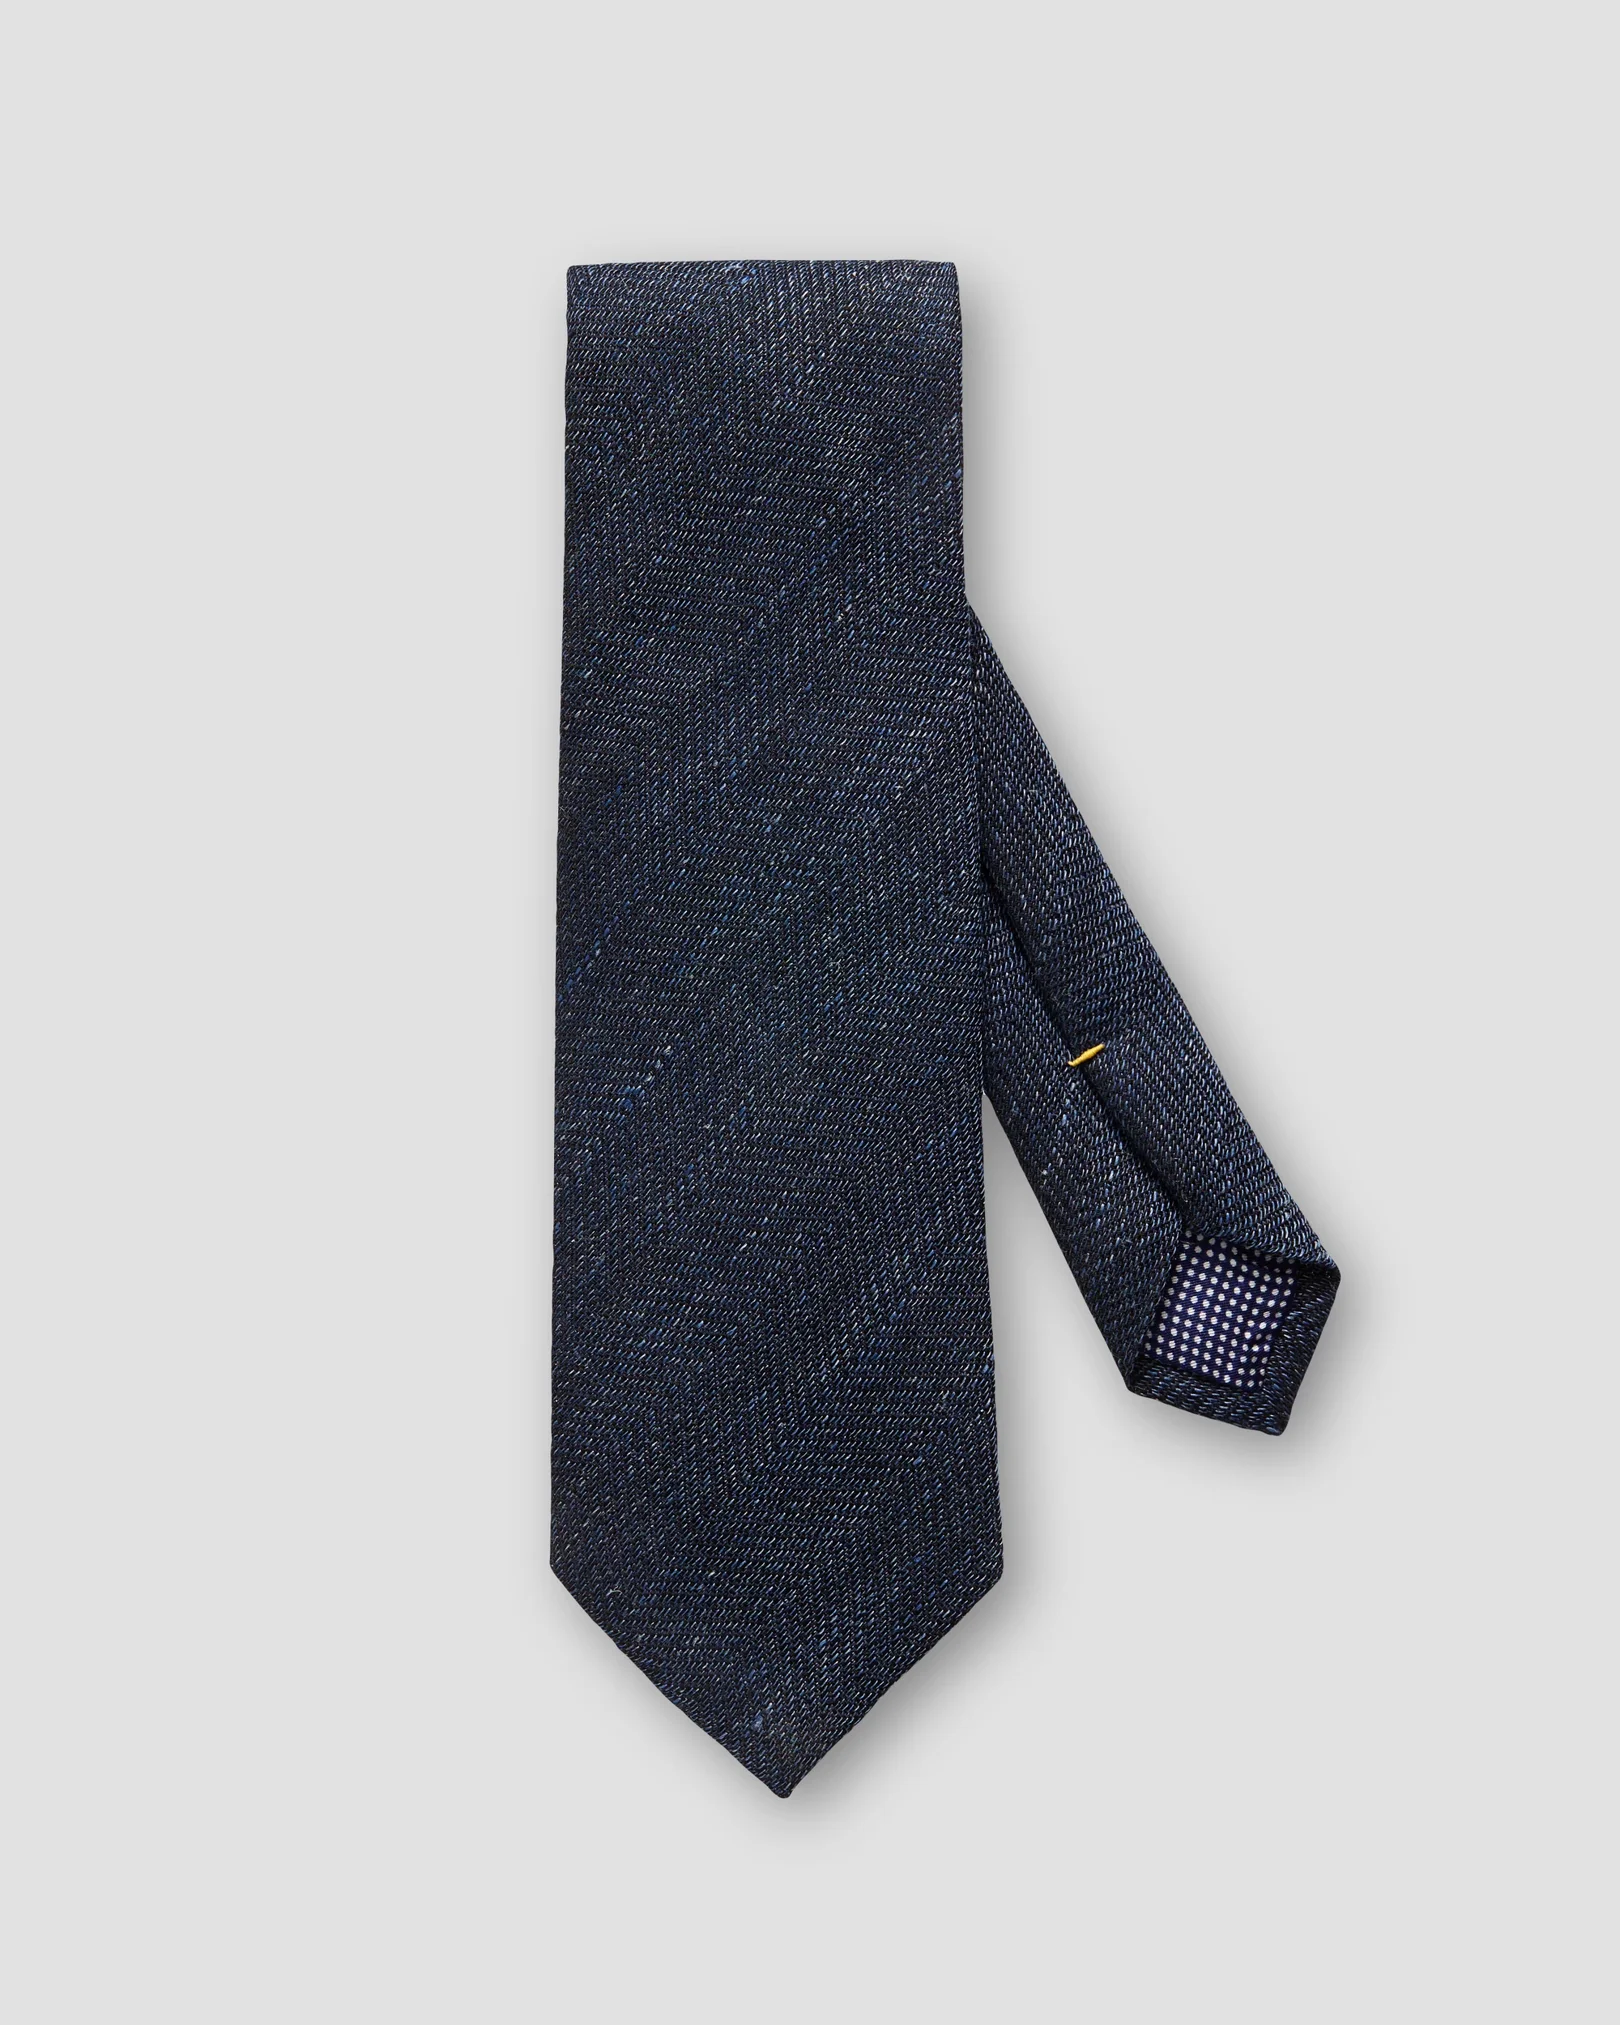 Eton - herringbone blend tie